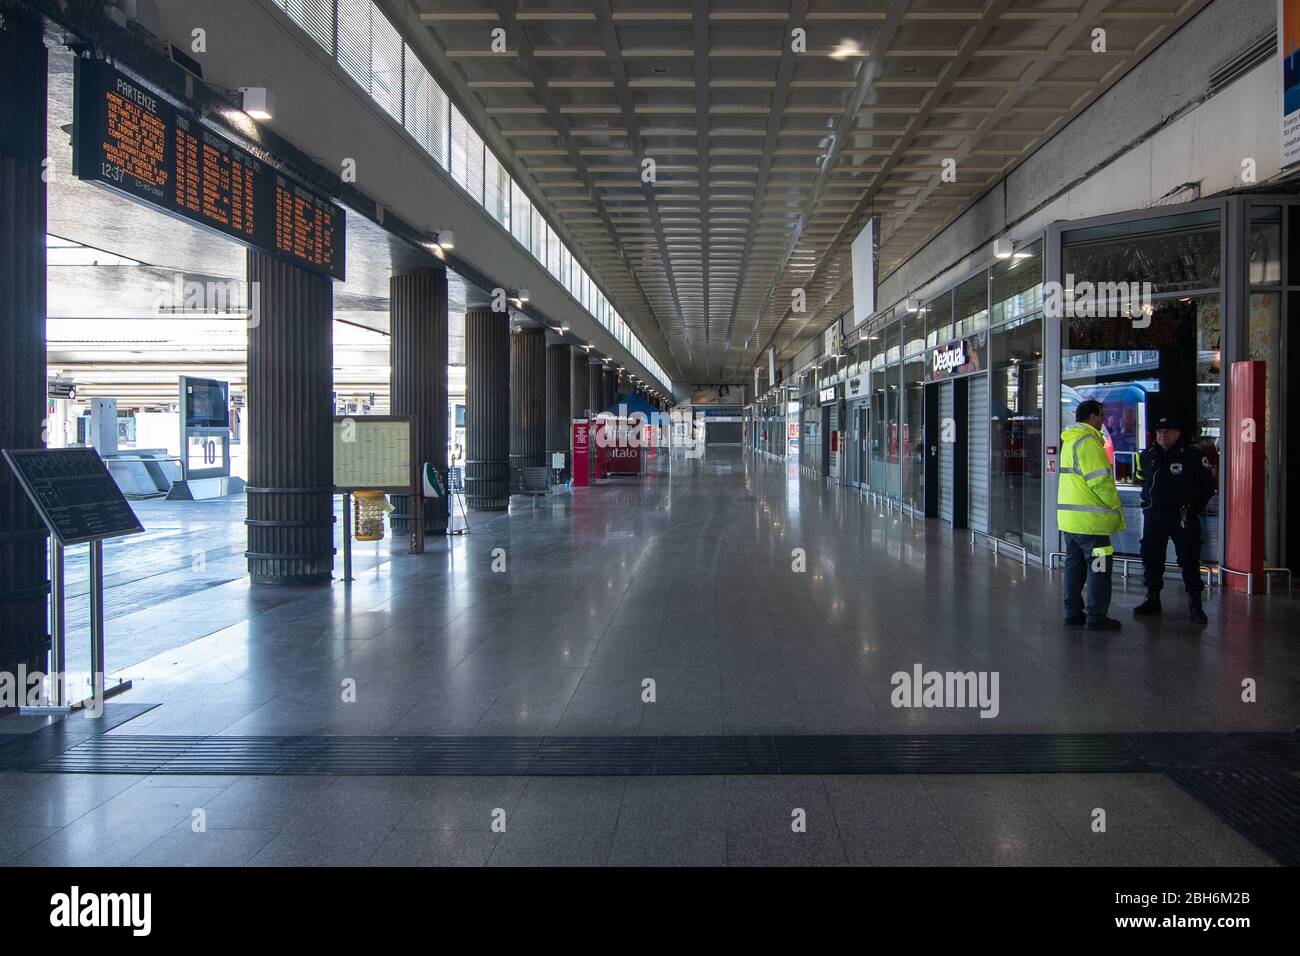 VENEZIA, ITALIA - APRILE 2020: Stazione ferroviaria di Venezia Santa Lucia durante il blocco nazionale per la pandemia Covid-19. Foto Stock